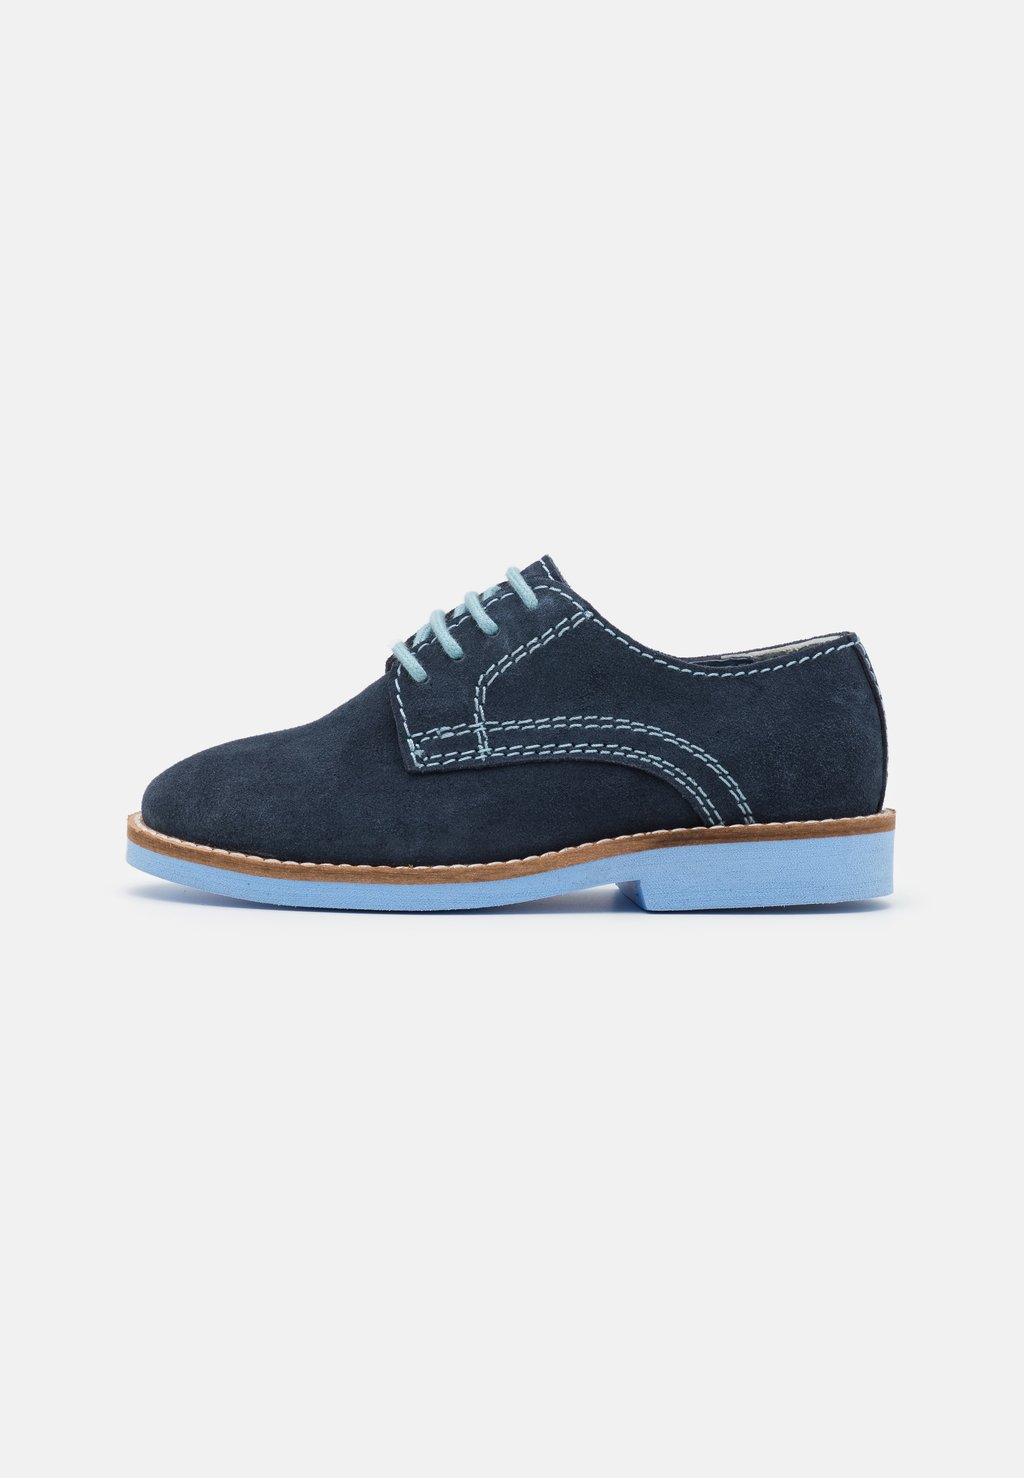 Спортивные туфли на шнуровке LEATHER Friboo, цвет dark blue спортивные туфли на шнуровке leather pier one цвет dark blue